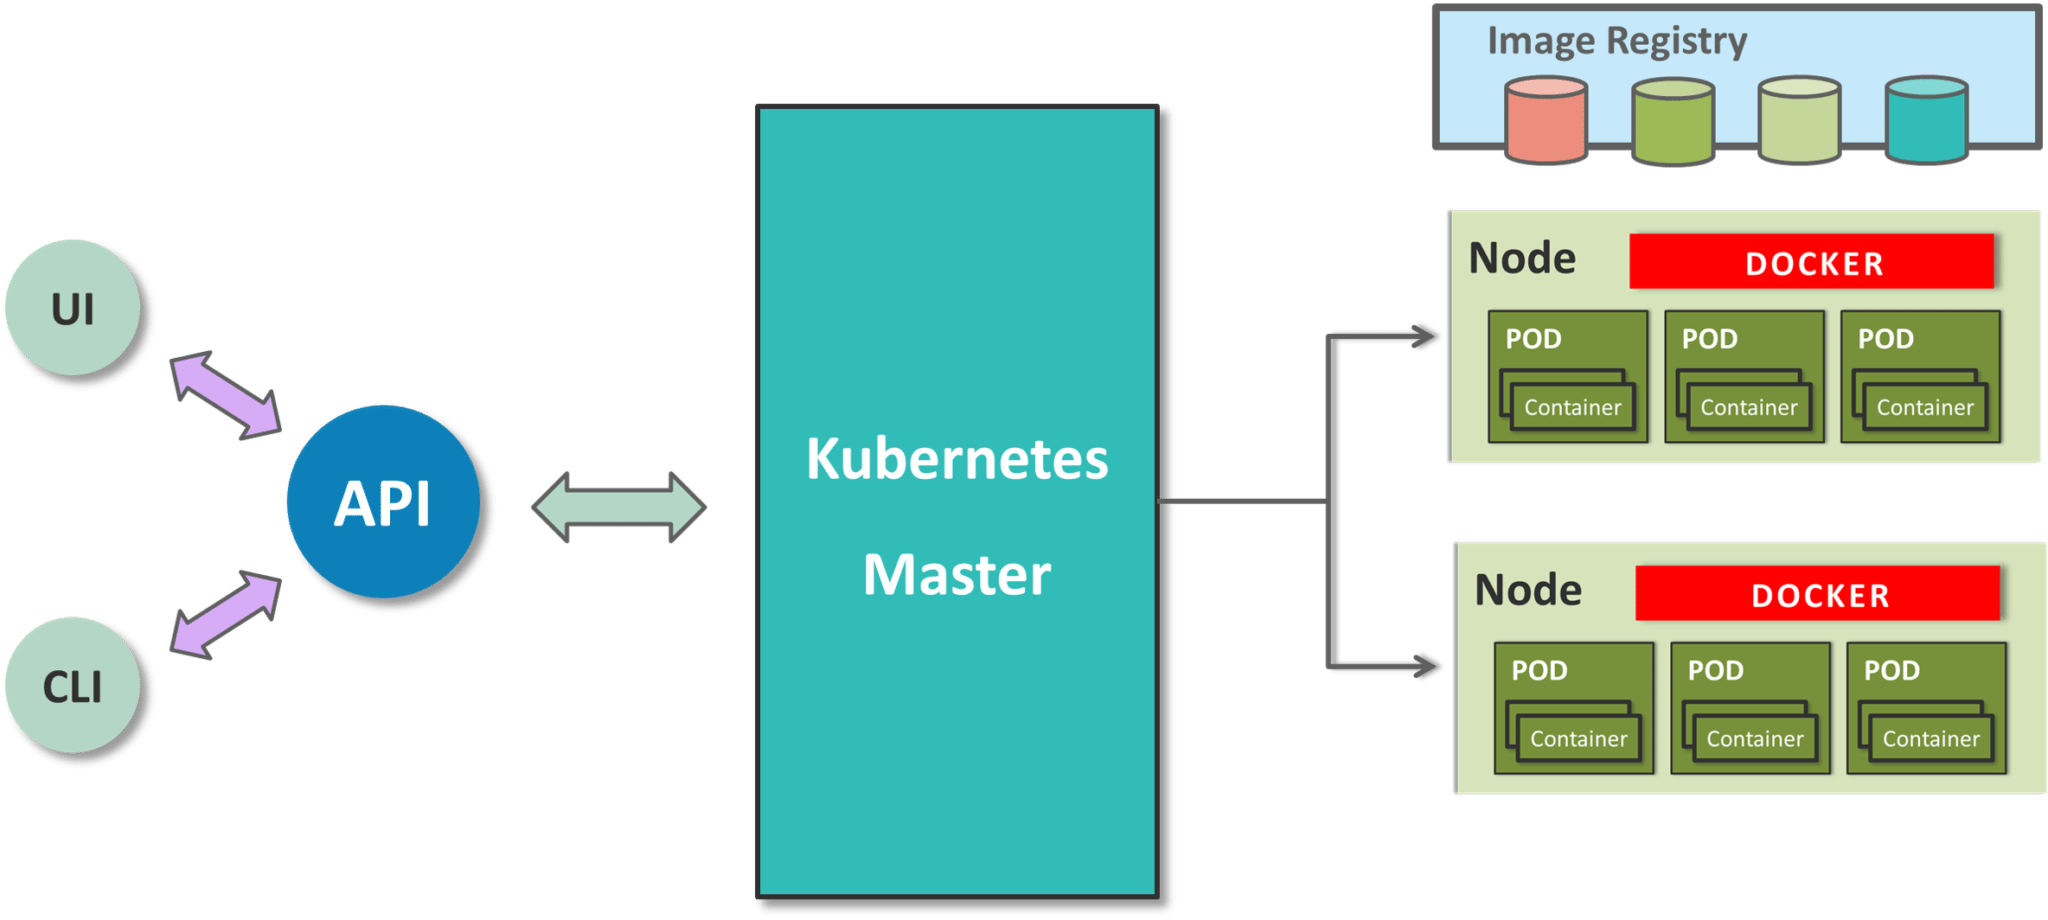 kubernetes architecture - what is kubernetes - edureka